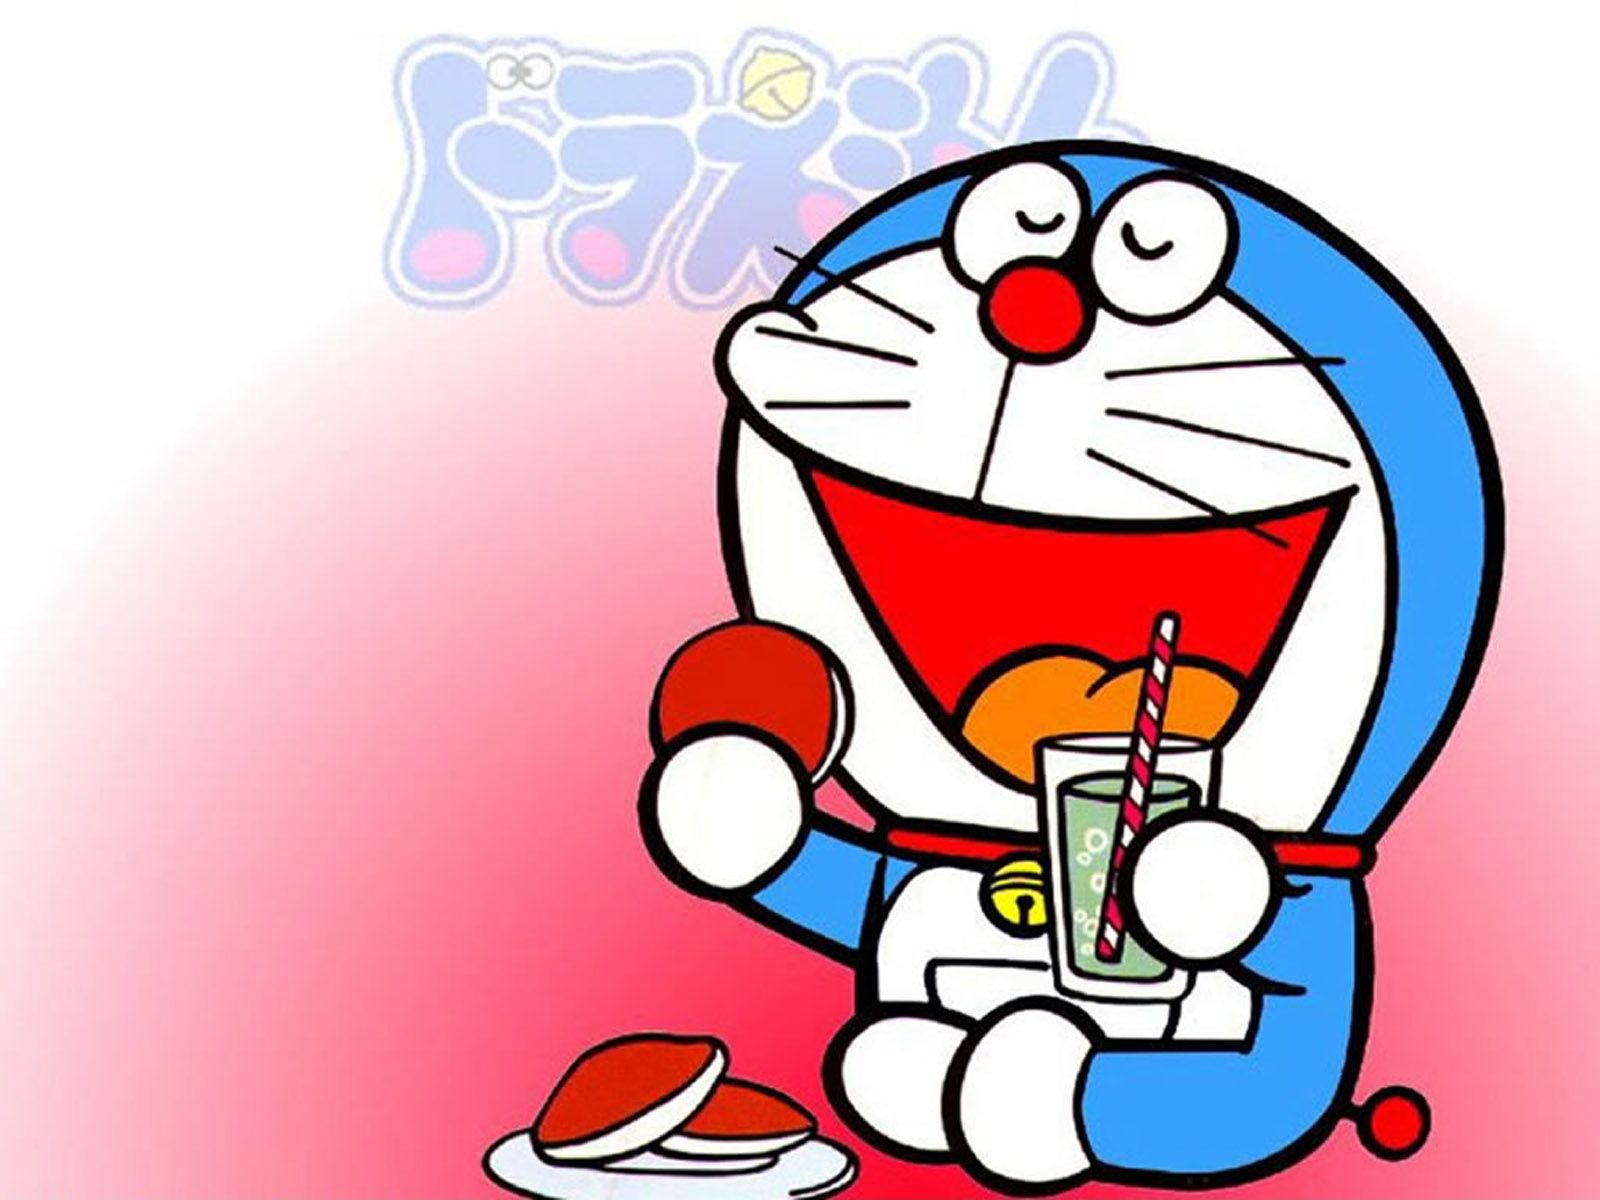 Doraemon Image 1600x1200 Wallpapers, 1600x1200 Wallpapers ...